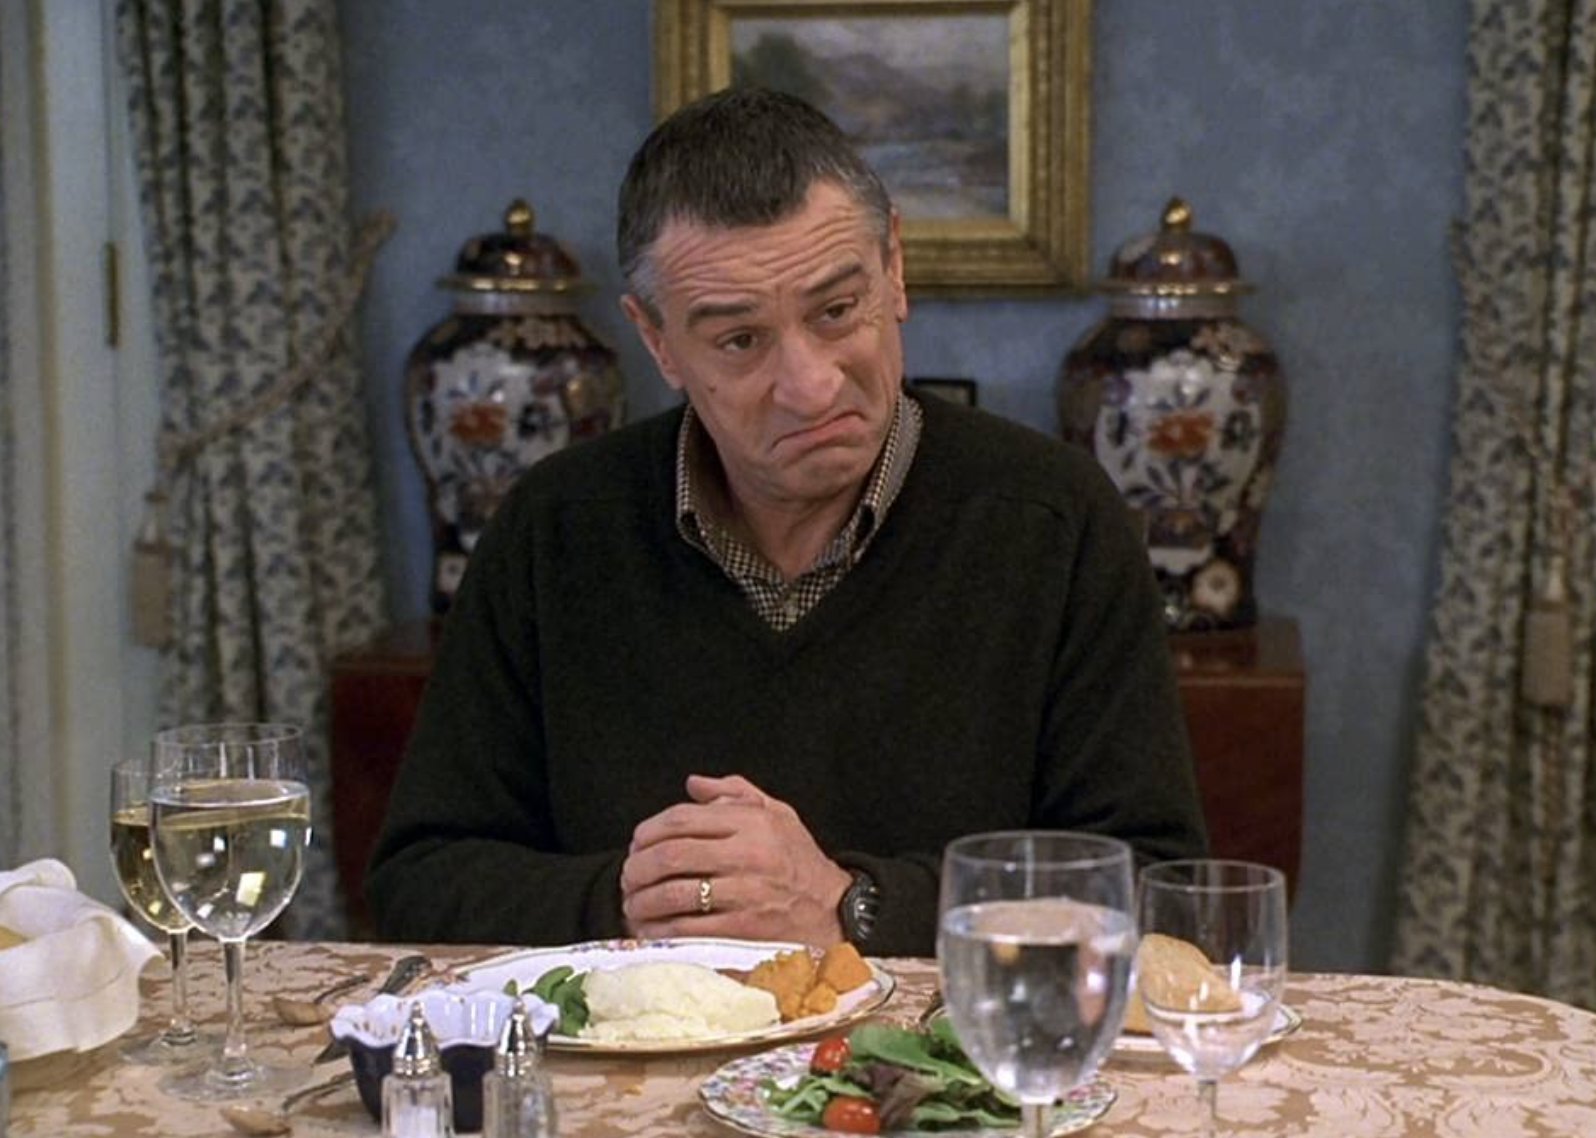 Robert De Niro in a dinner scene from "Meet the Parents"